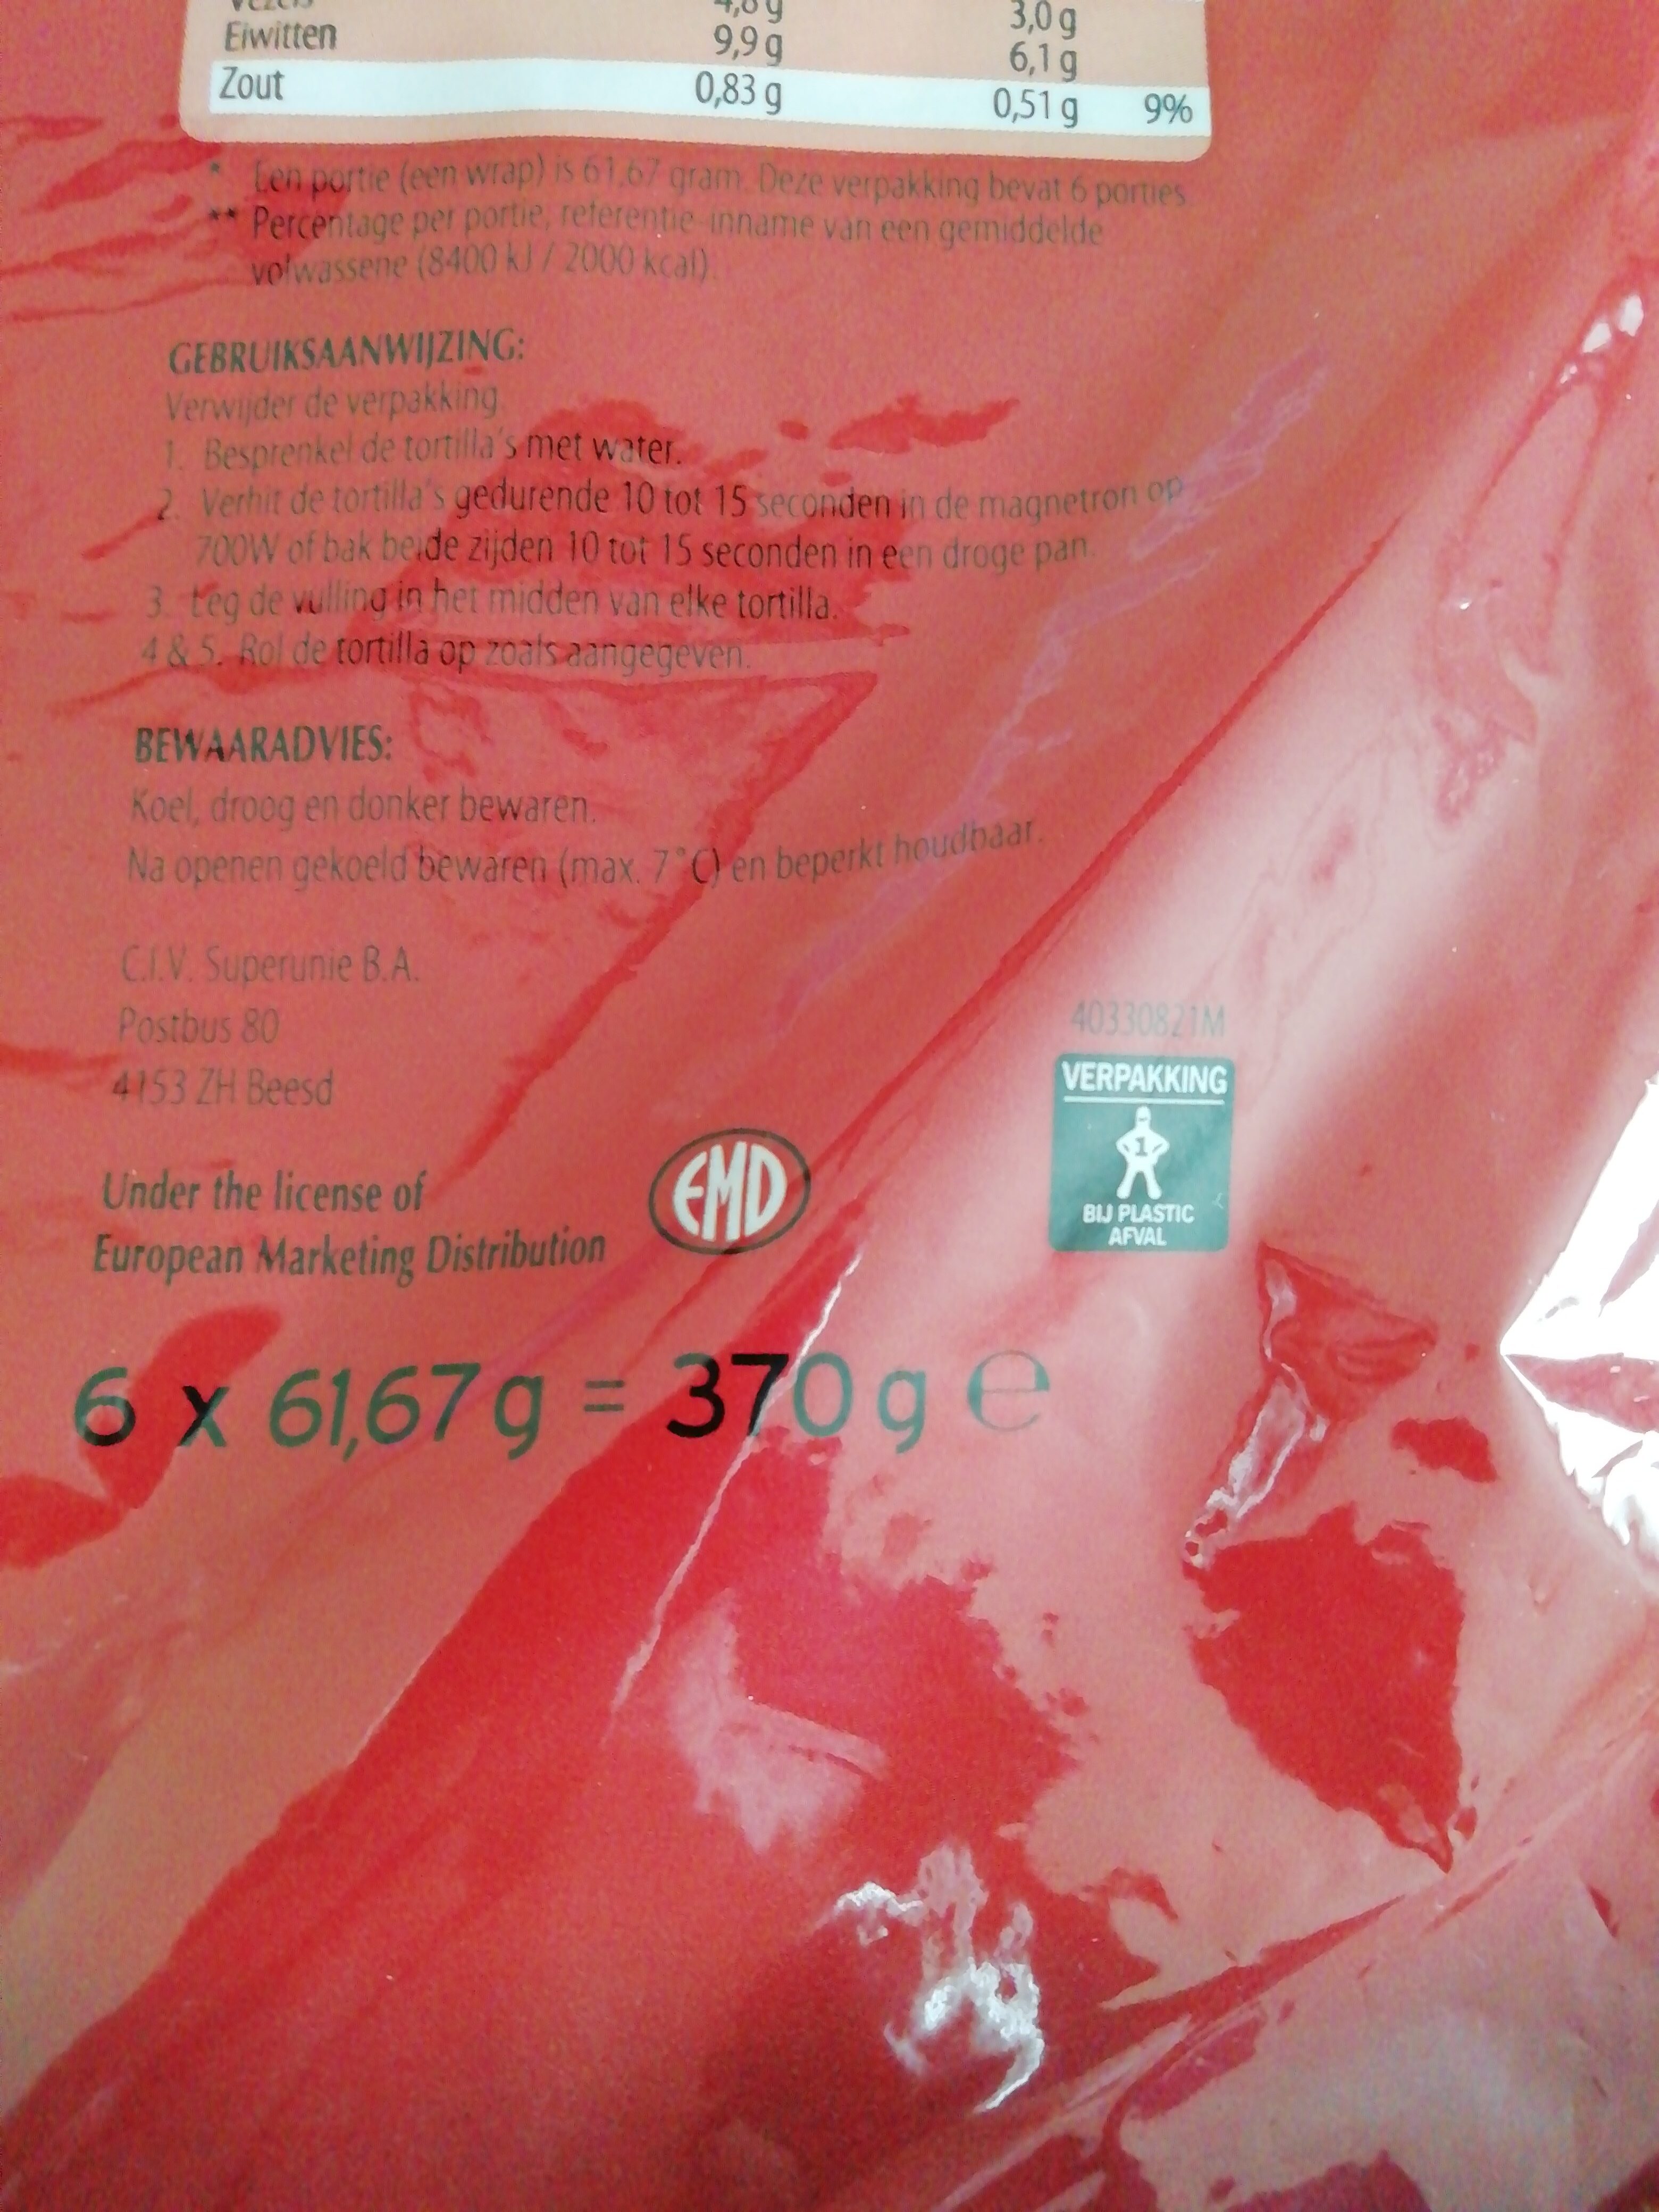 Bieten wraps - Recyclinginstructies en / of verpakkingsinformatie